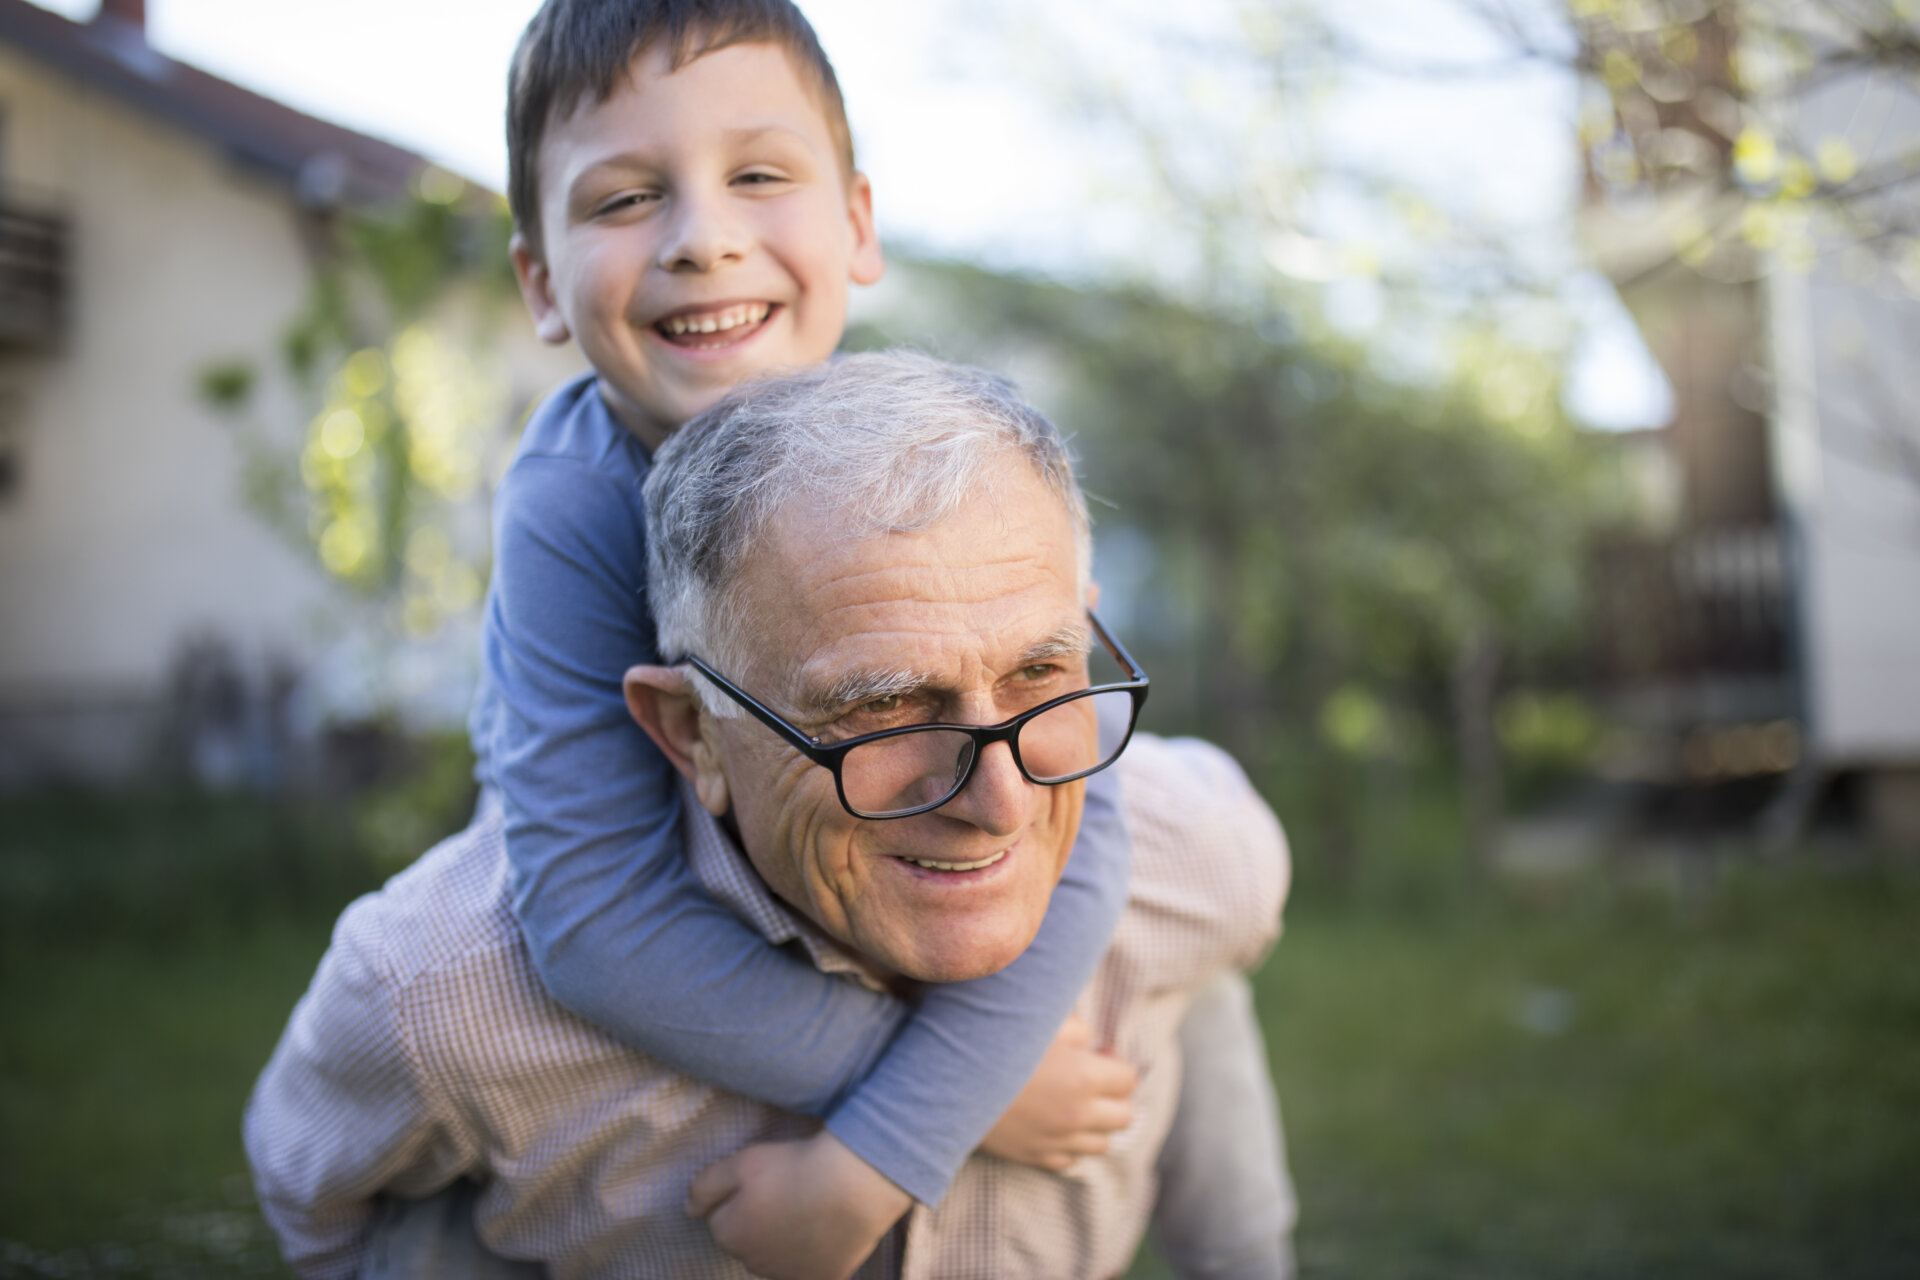 Ένας παππούς με το εγγόνι του, το οποίο έχει στους ώμους του και φαίνονται να απολαμβάνουν χαρούμενες στιγμές στον κήπο του σπιτιού τους.